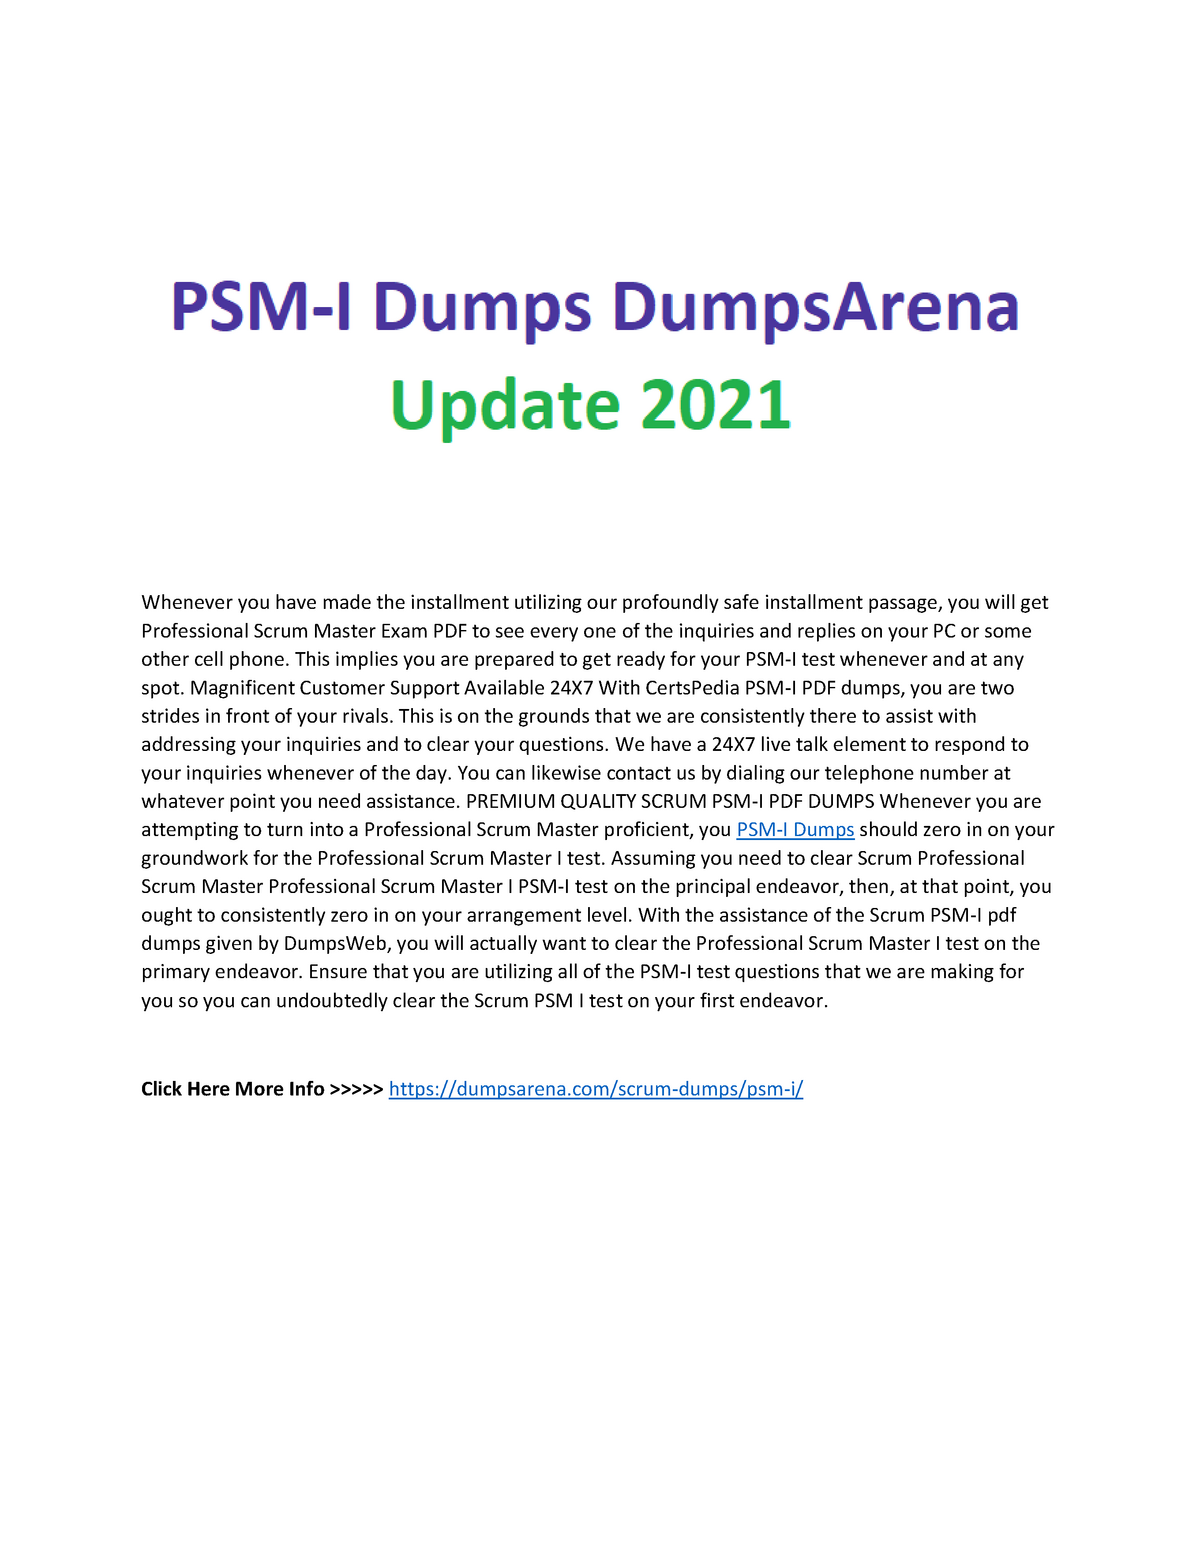 PSM-I PDF